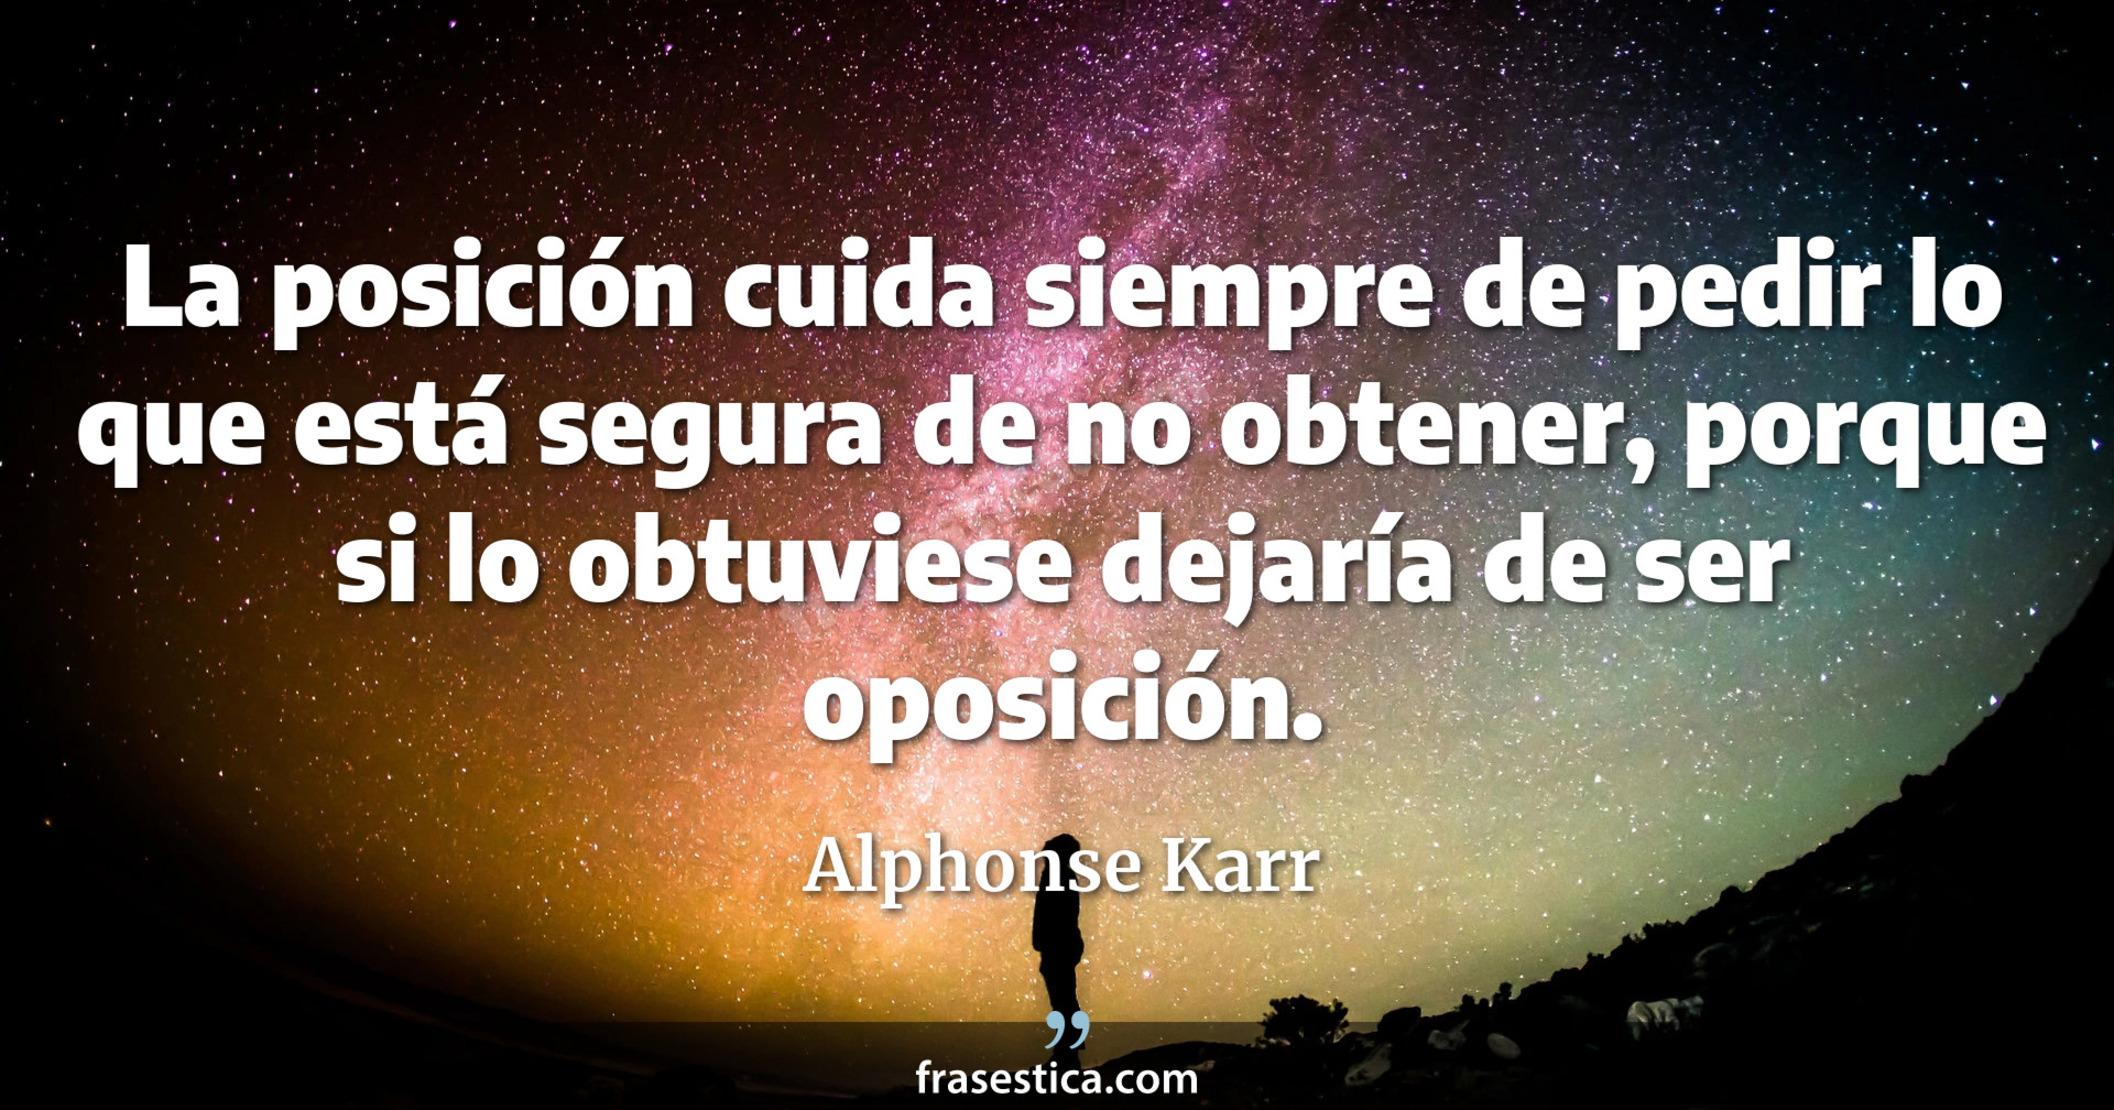 La posición cuida siempre de pedir lo que está segura de no obtener, porque si lo obtuviese dejaría de ser oposición. - Alphonse Karr